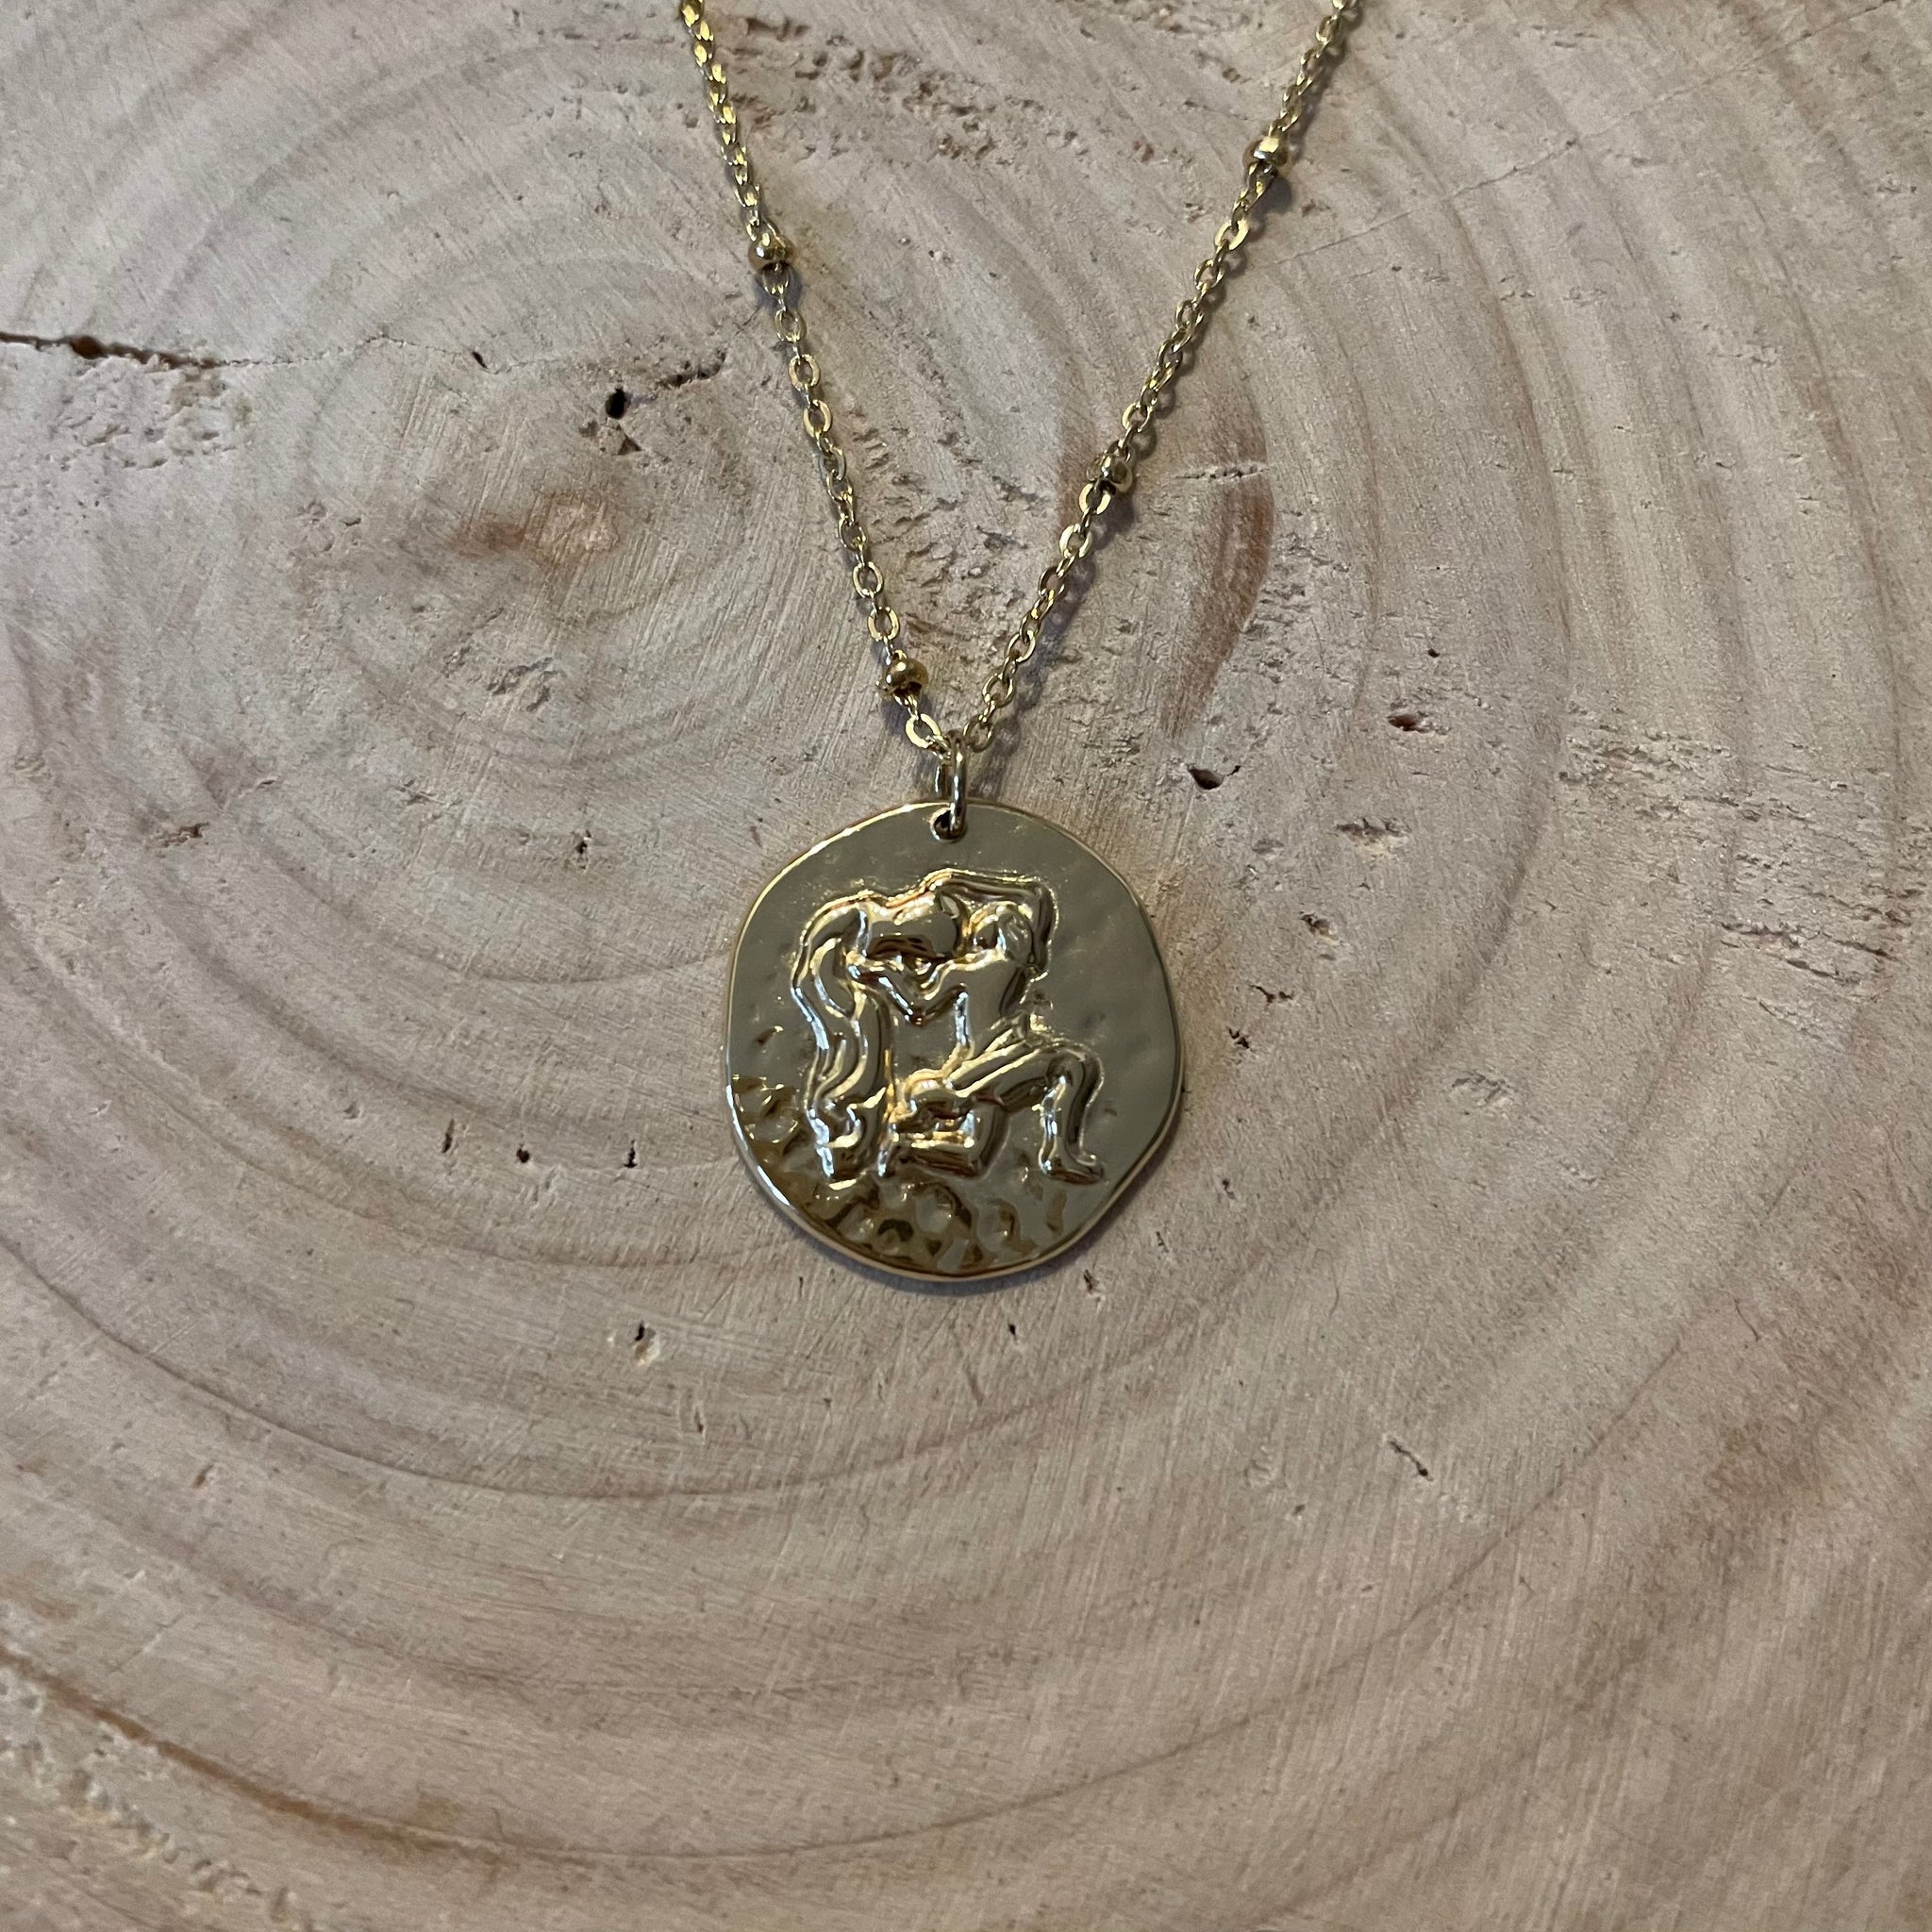 Astro Necklace - Gold - Taurus